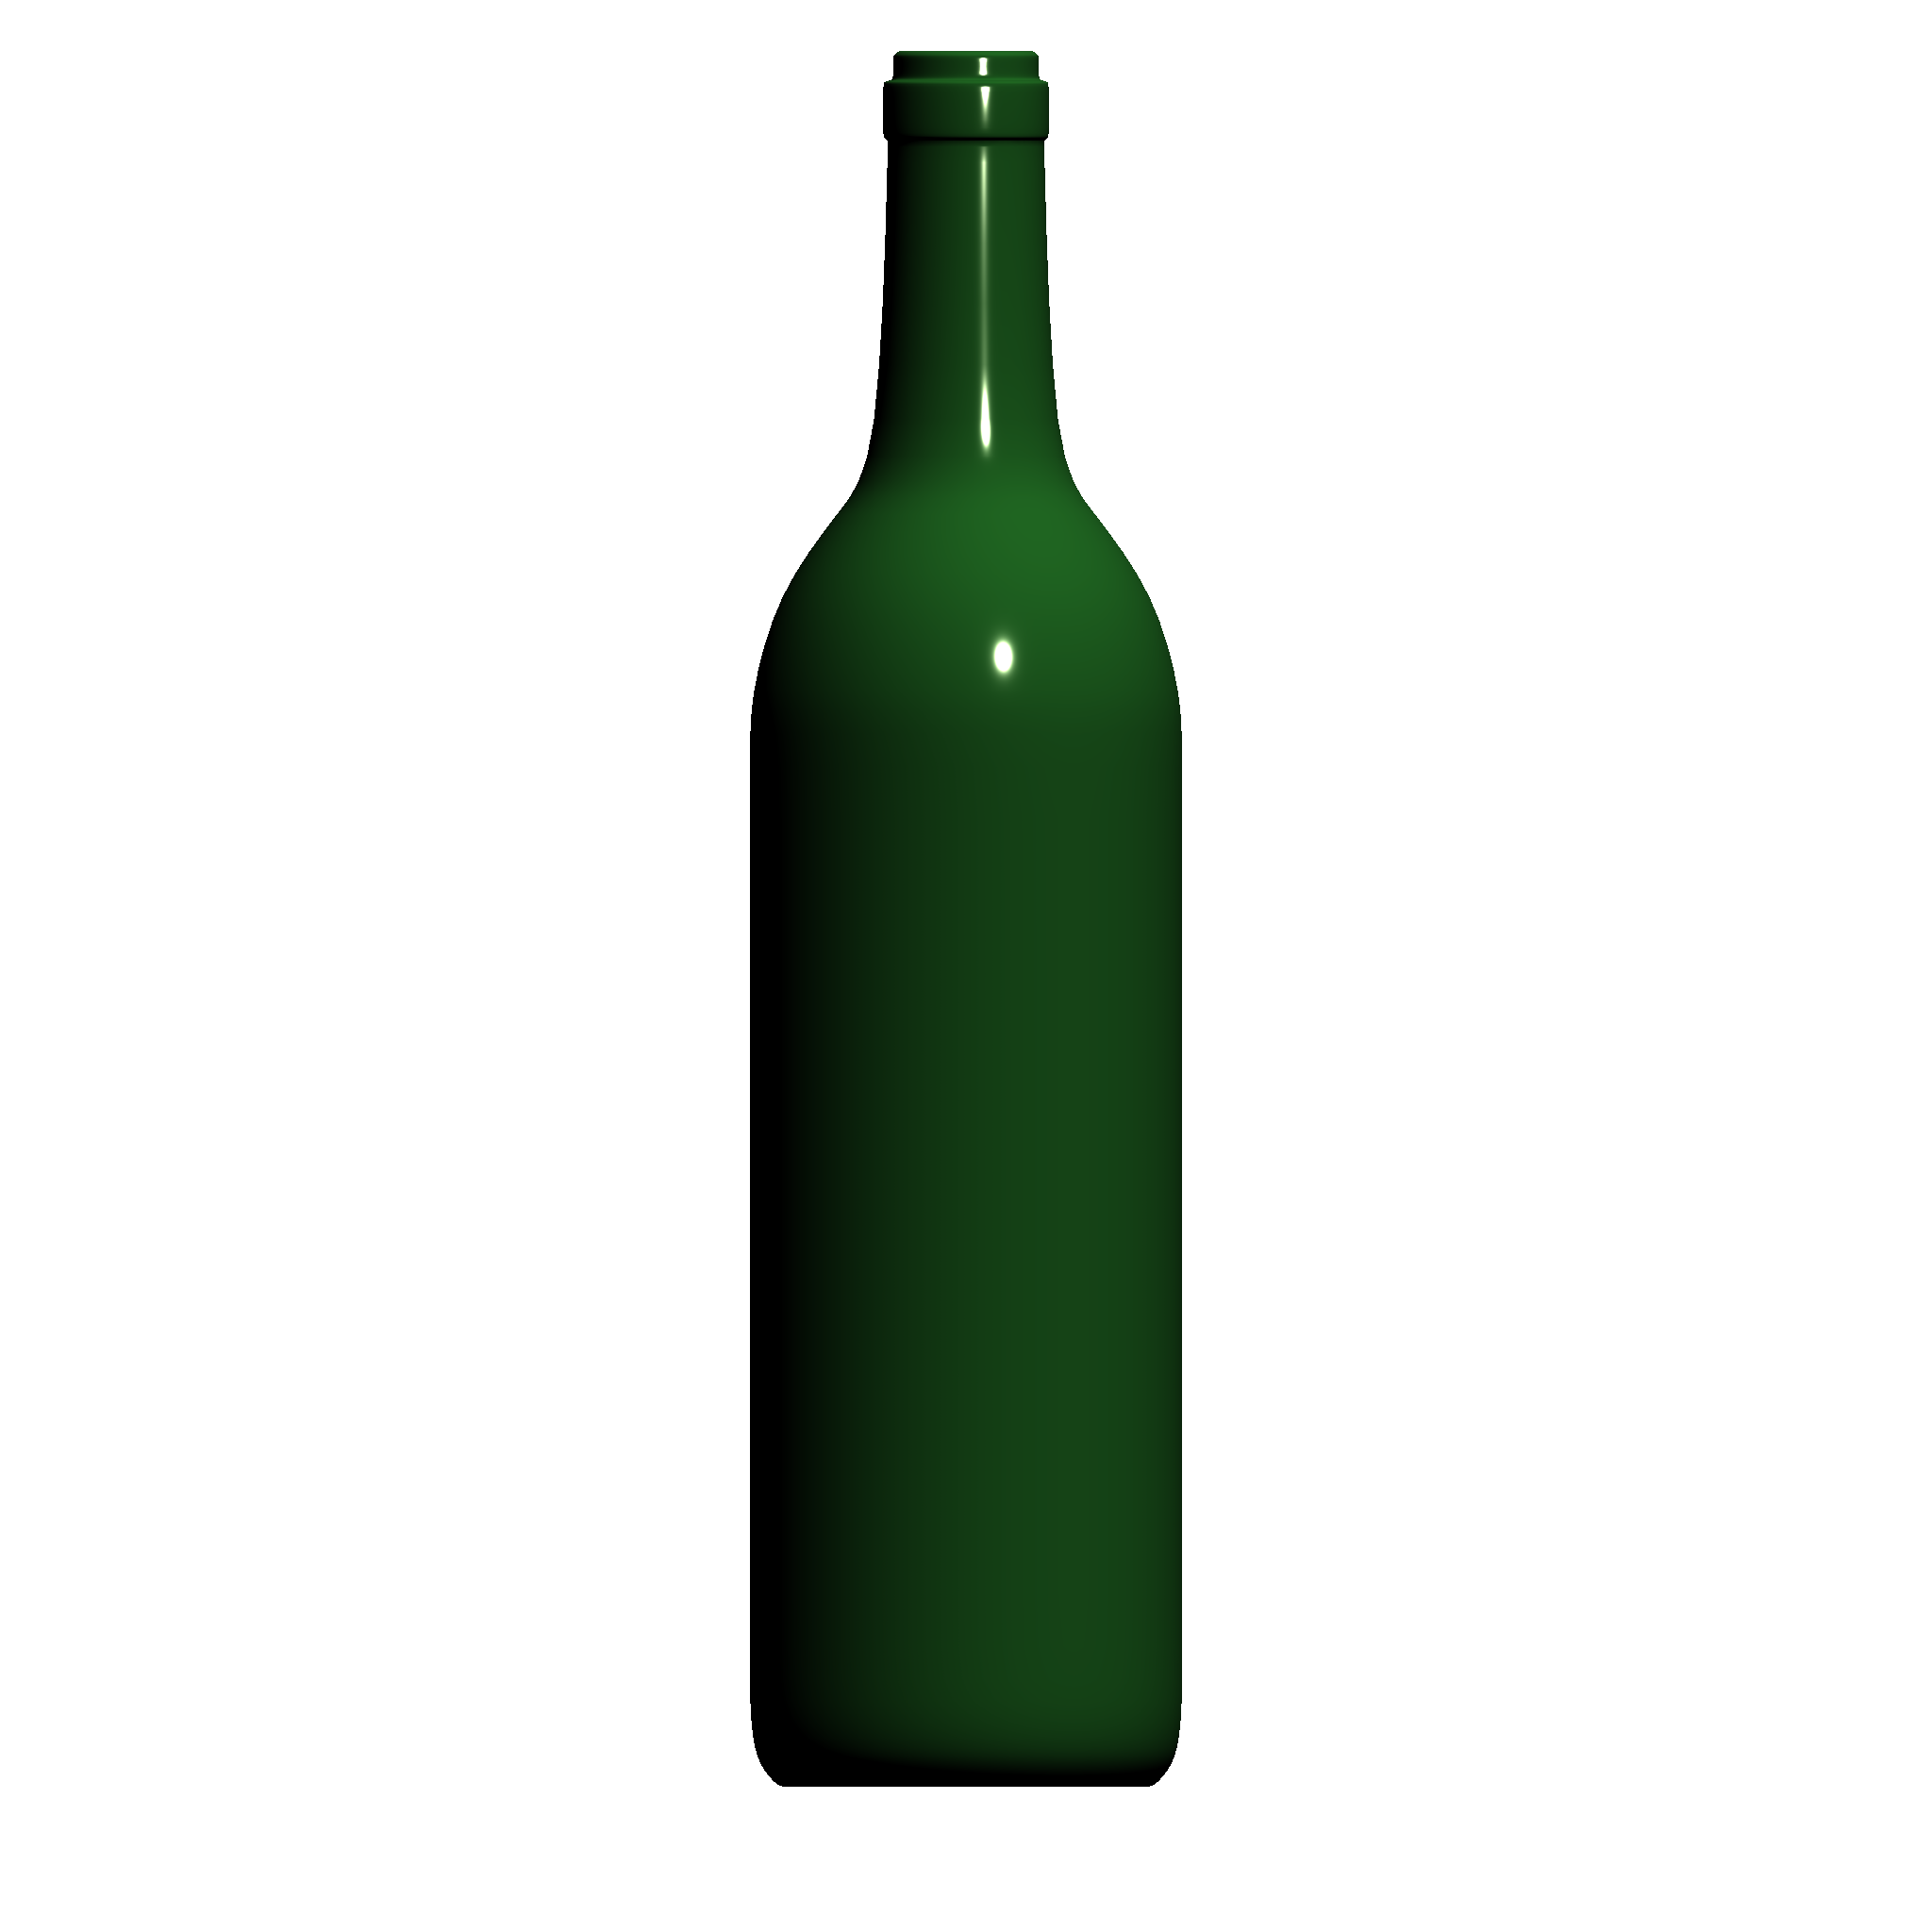 drinking-games-ideas-bottle